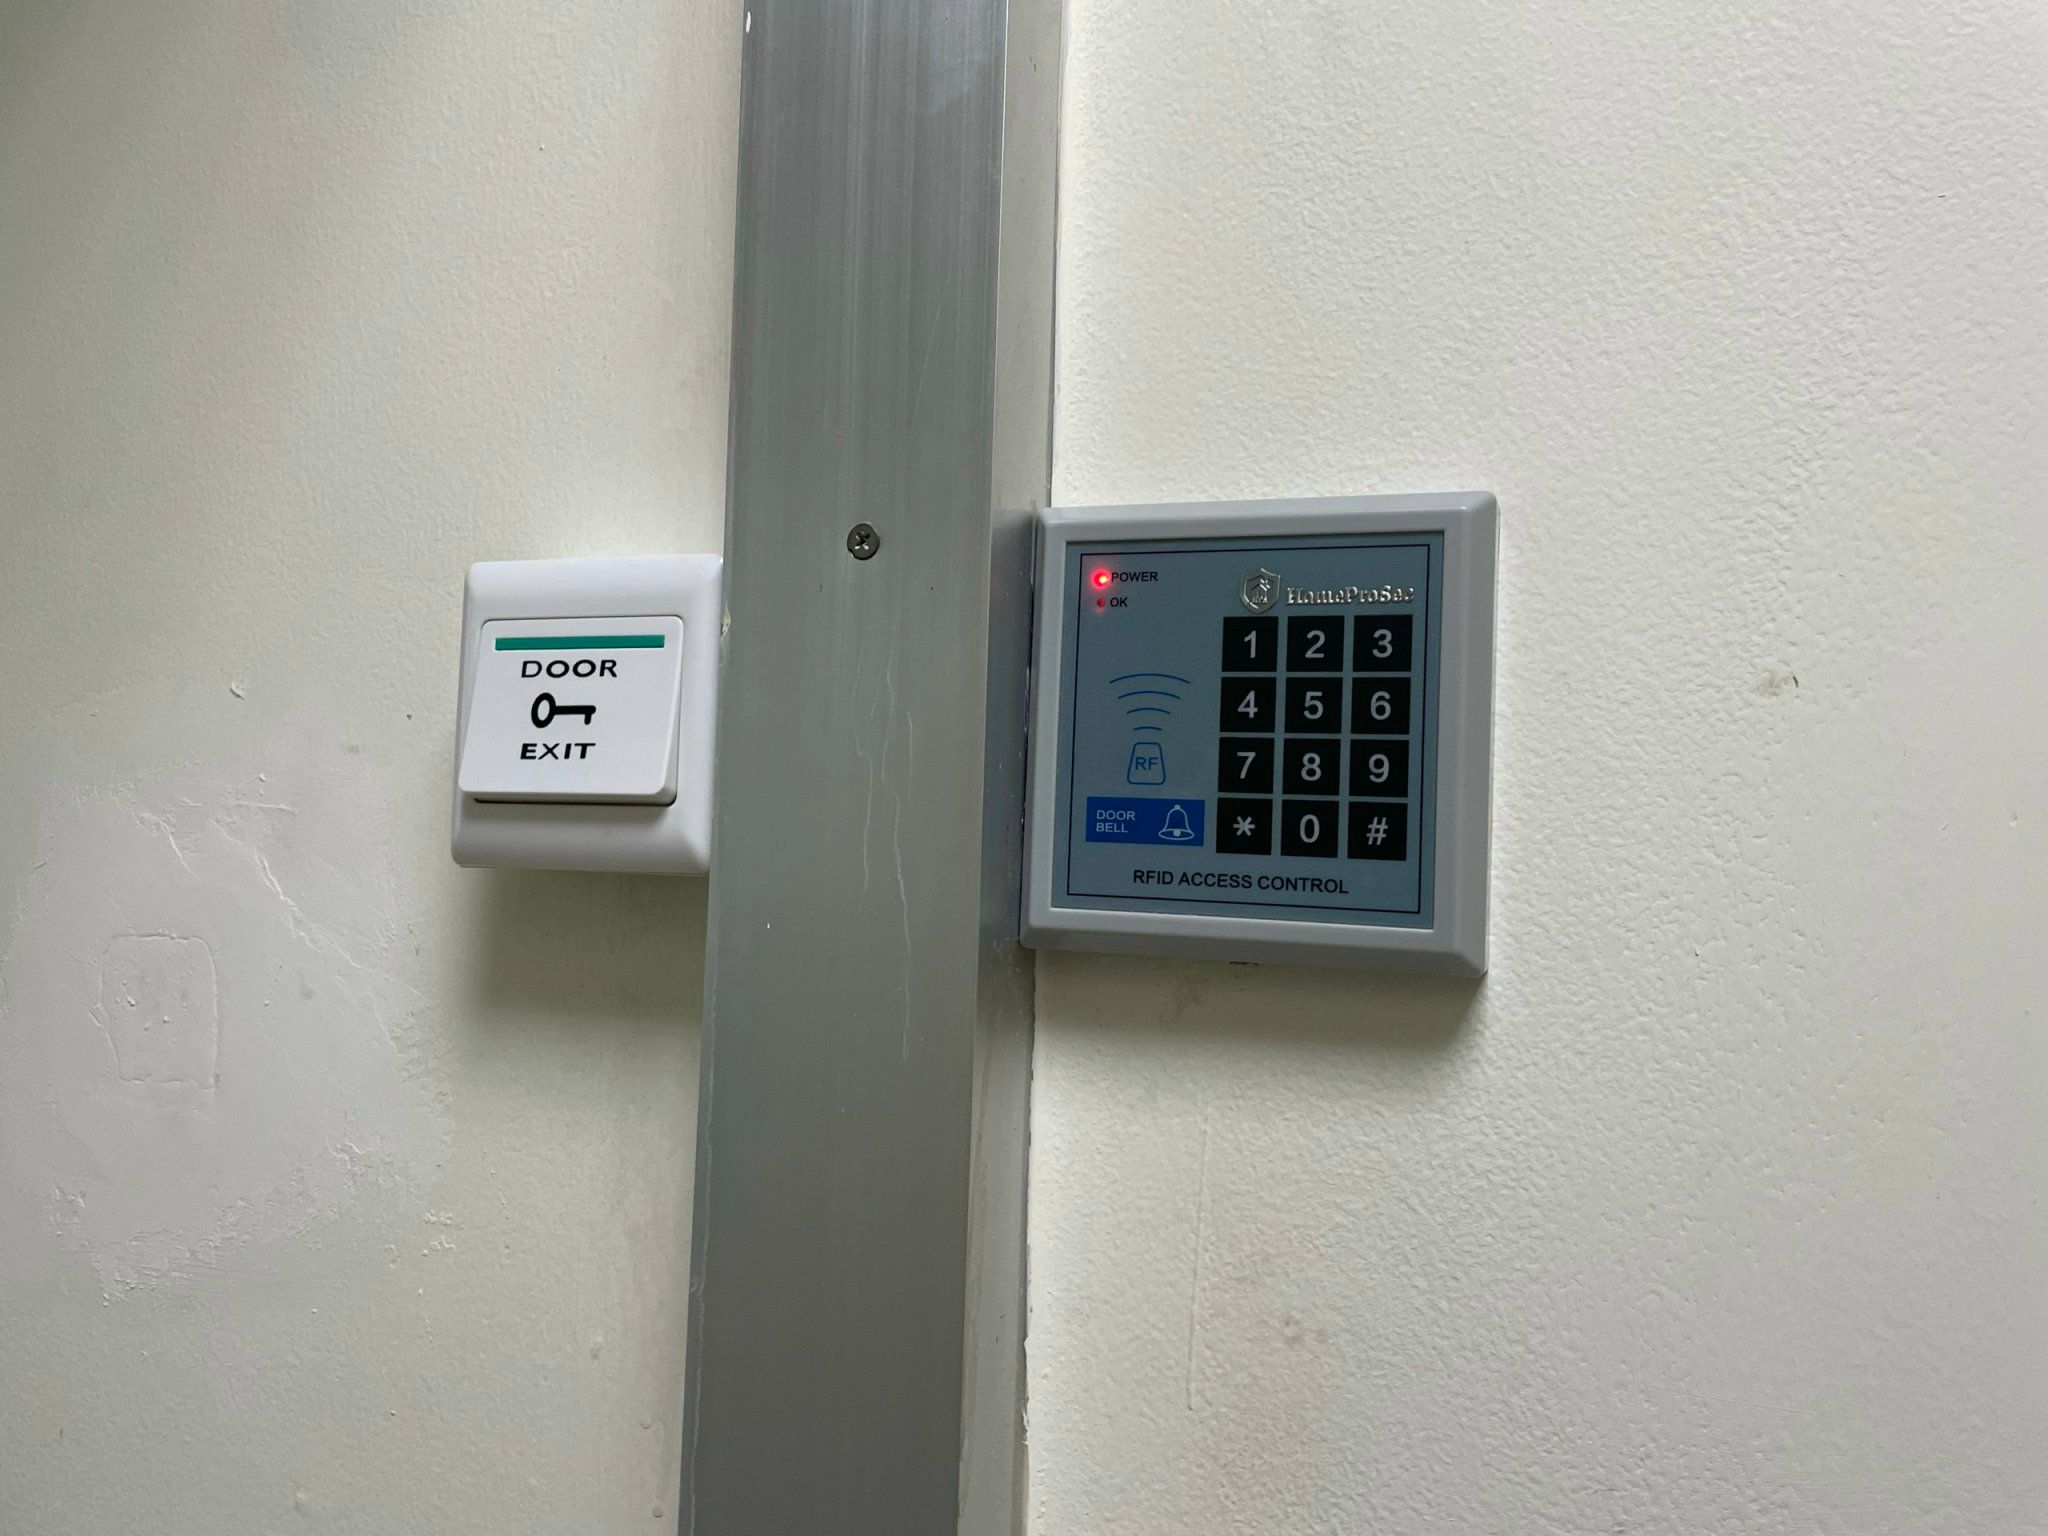  Hệ thống kiểm soát ra vào văn phòng HPS- EMLBASIC ( M2P3) 